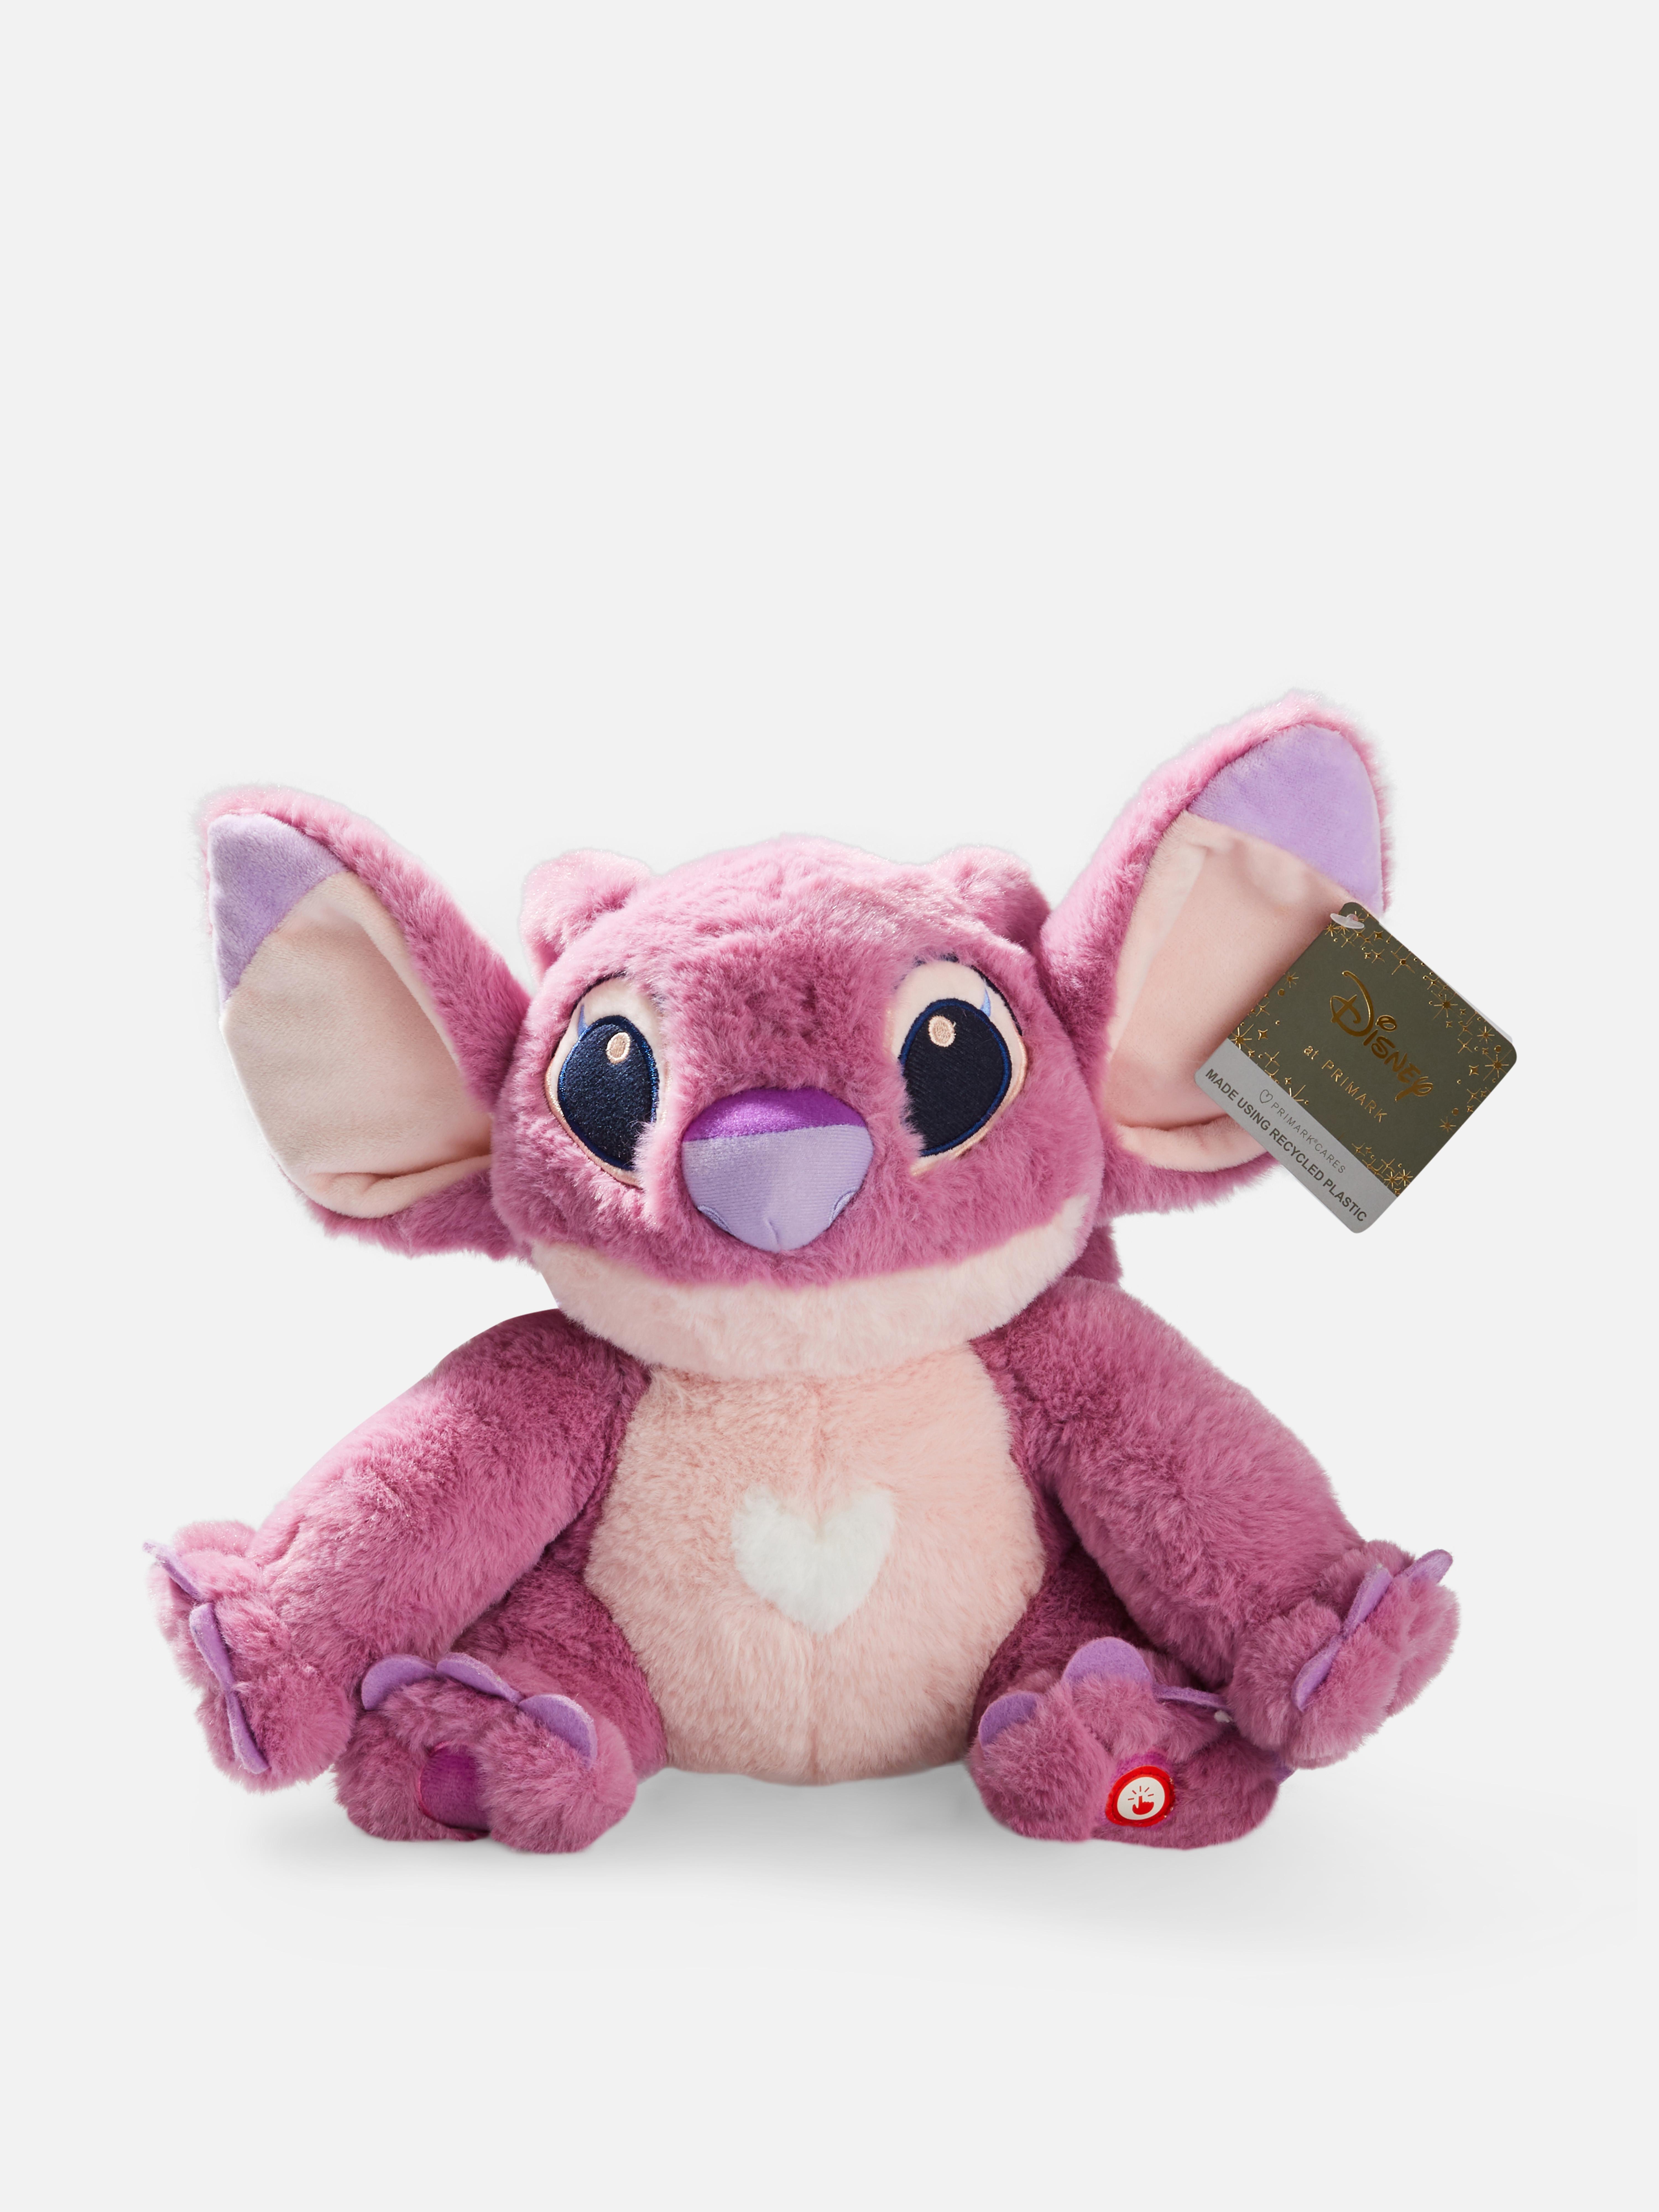 Disney's Lilo & Stitch Angel Plush Toy Purple